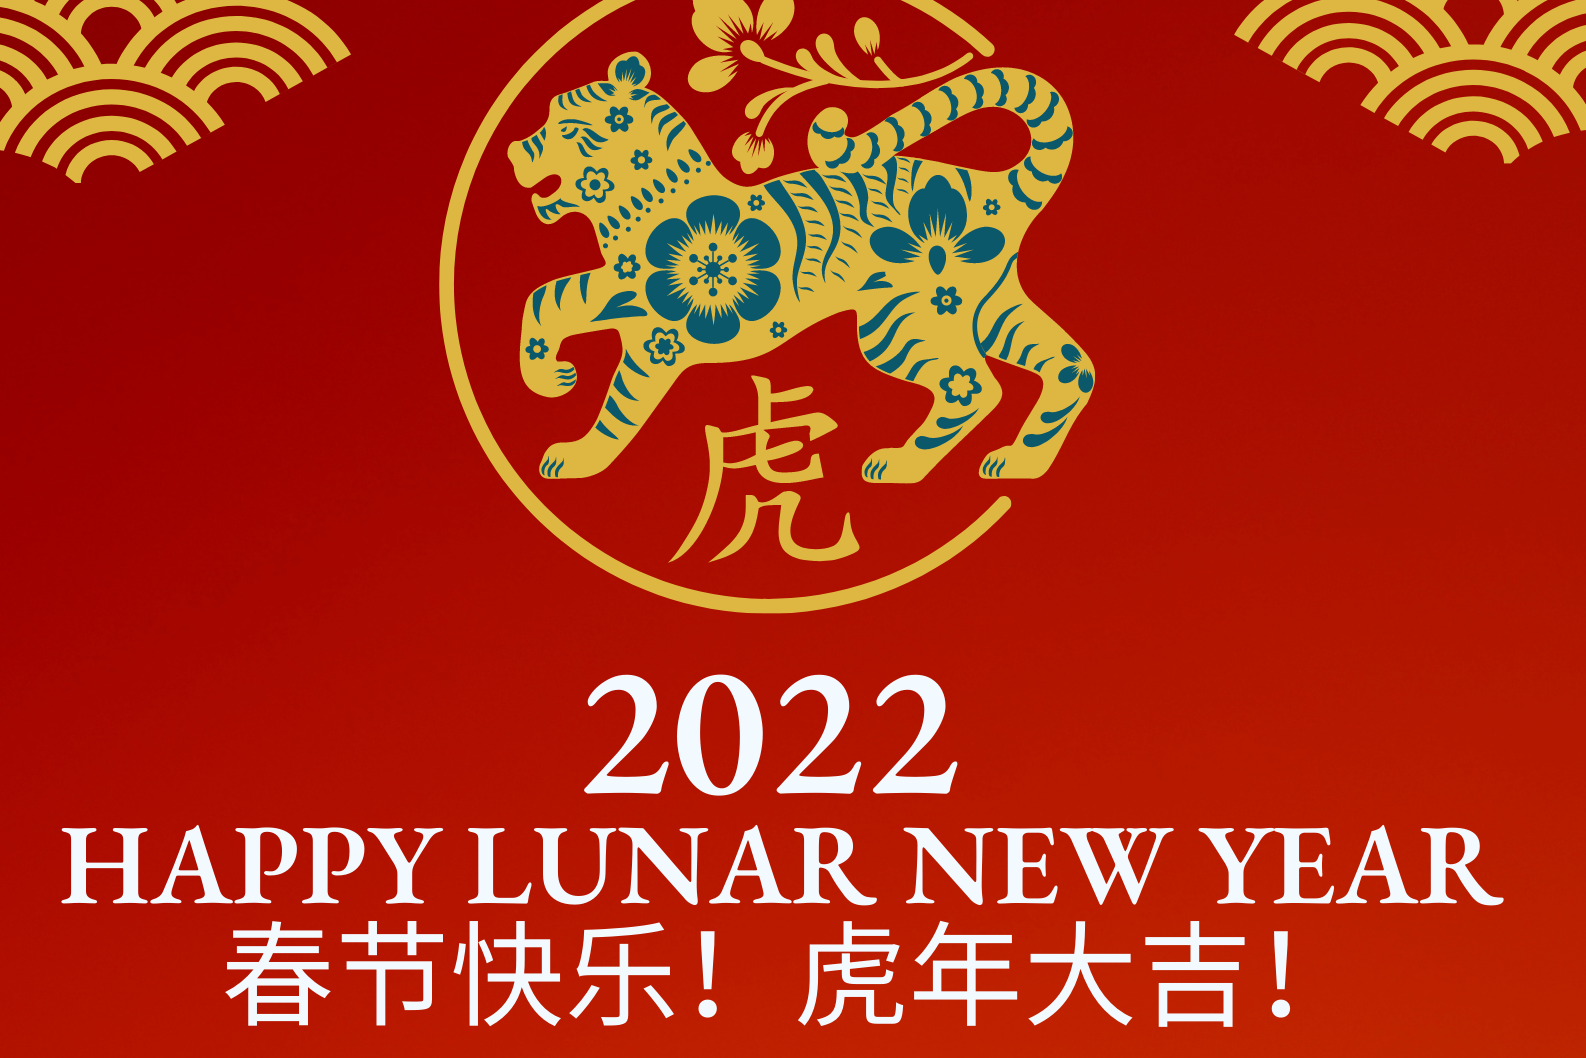   中国格里格斯恭祝2022新春快乐！  